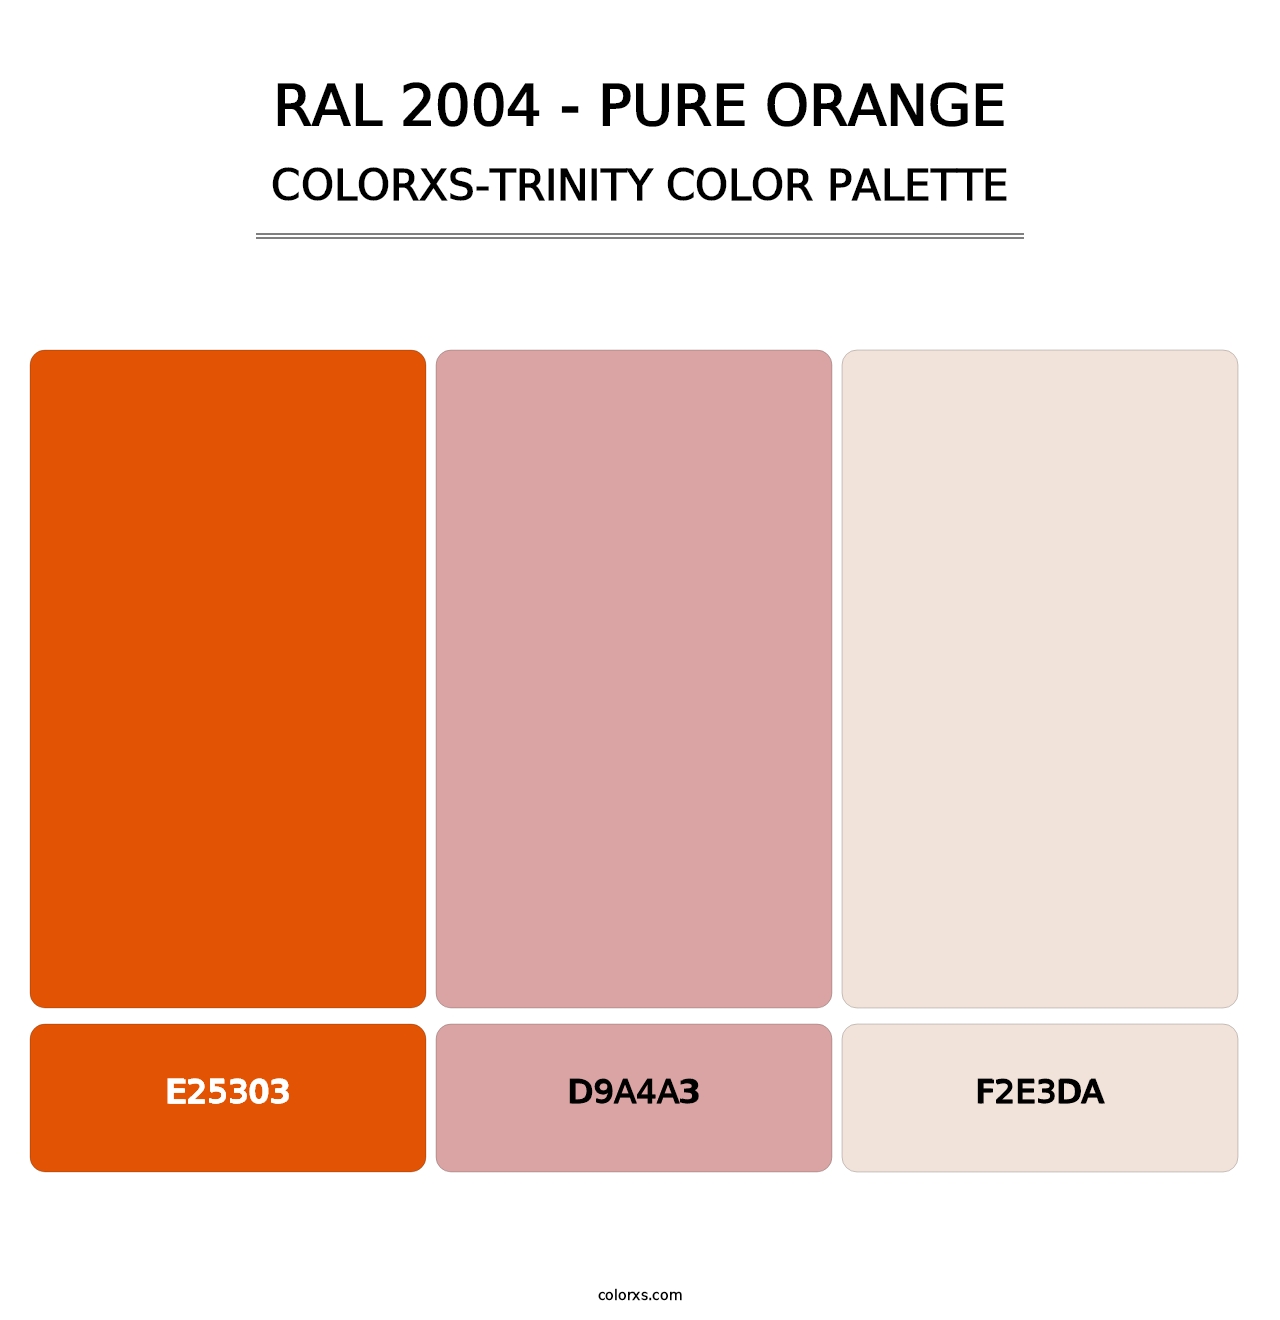 RAL 2004 - Pure Orange - Colorxs Trinity Palette